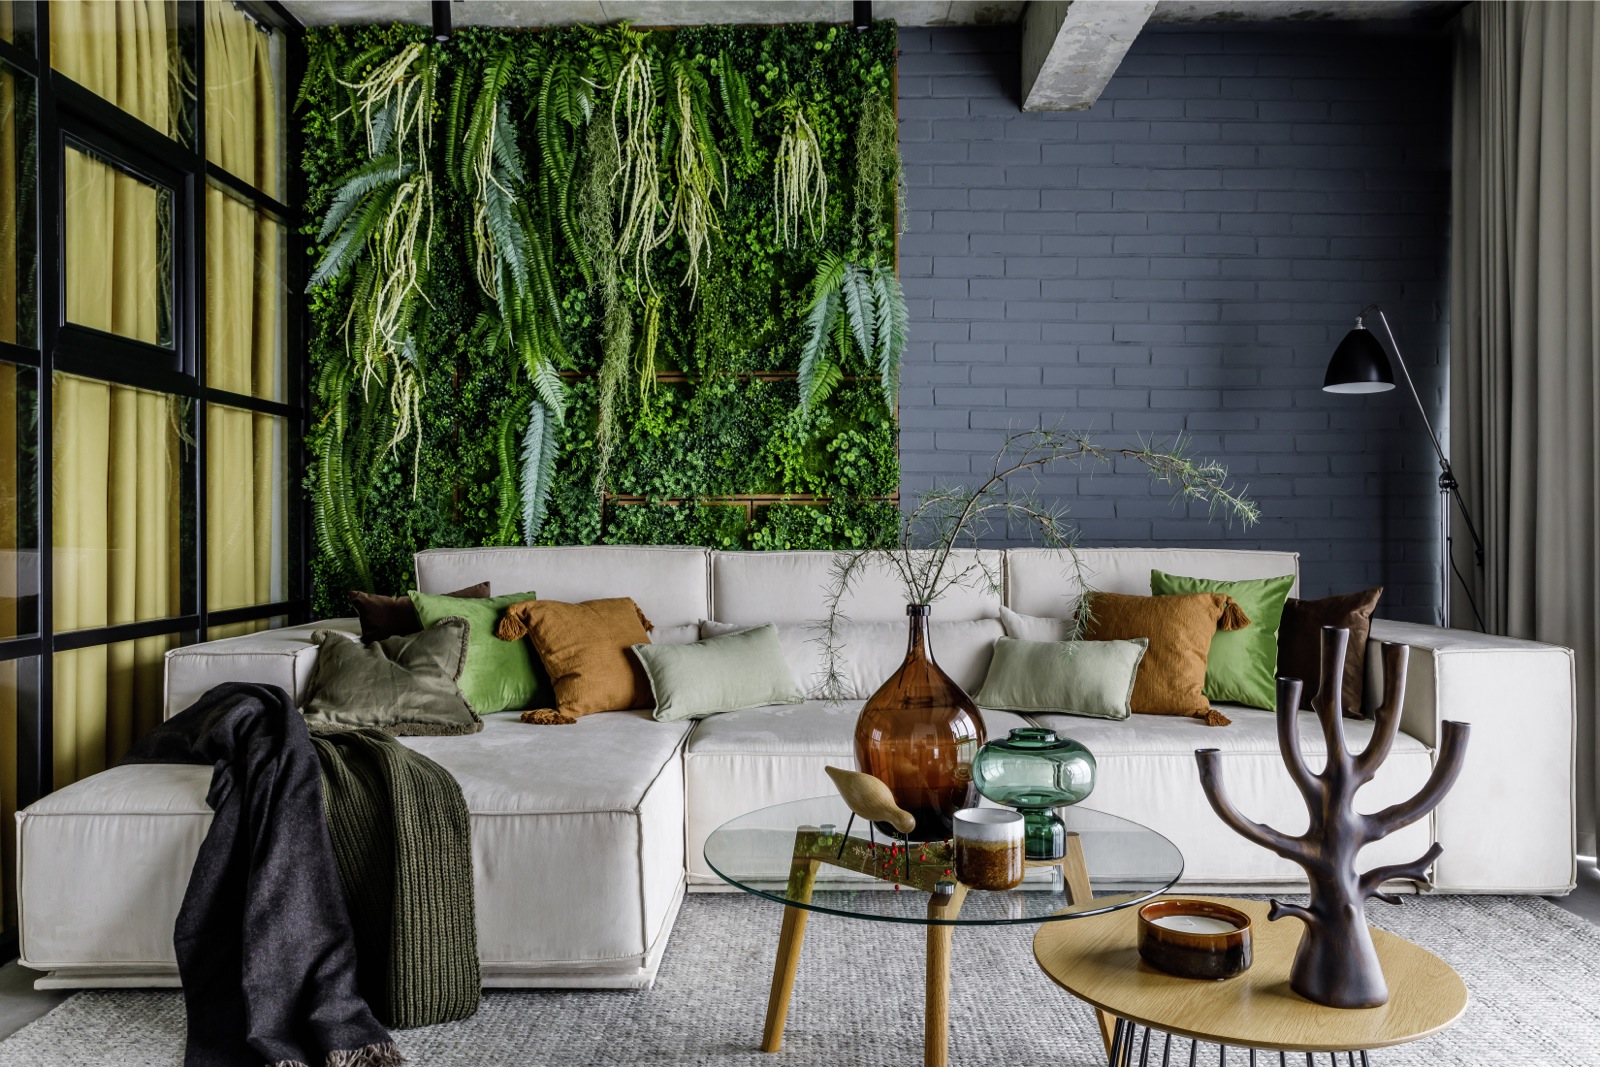 Phòng khách thiết kế theo phong cách Organic với tường gạch sơn màu xanh lam đậm, nội thất gỗ mộc mạc. Ghế sofa cỡ lớn tuy sử dụng gam màu trắng nhưng vẫn không bị nhạt nhòa nhờ 'khu vườn thẳng đứng' làm bức tranh sống động phía sau.